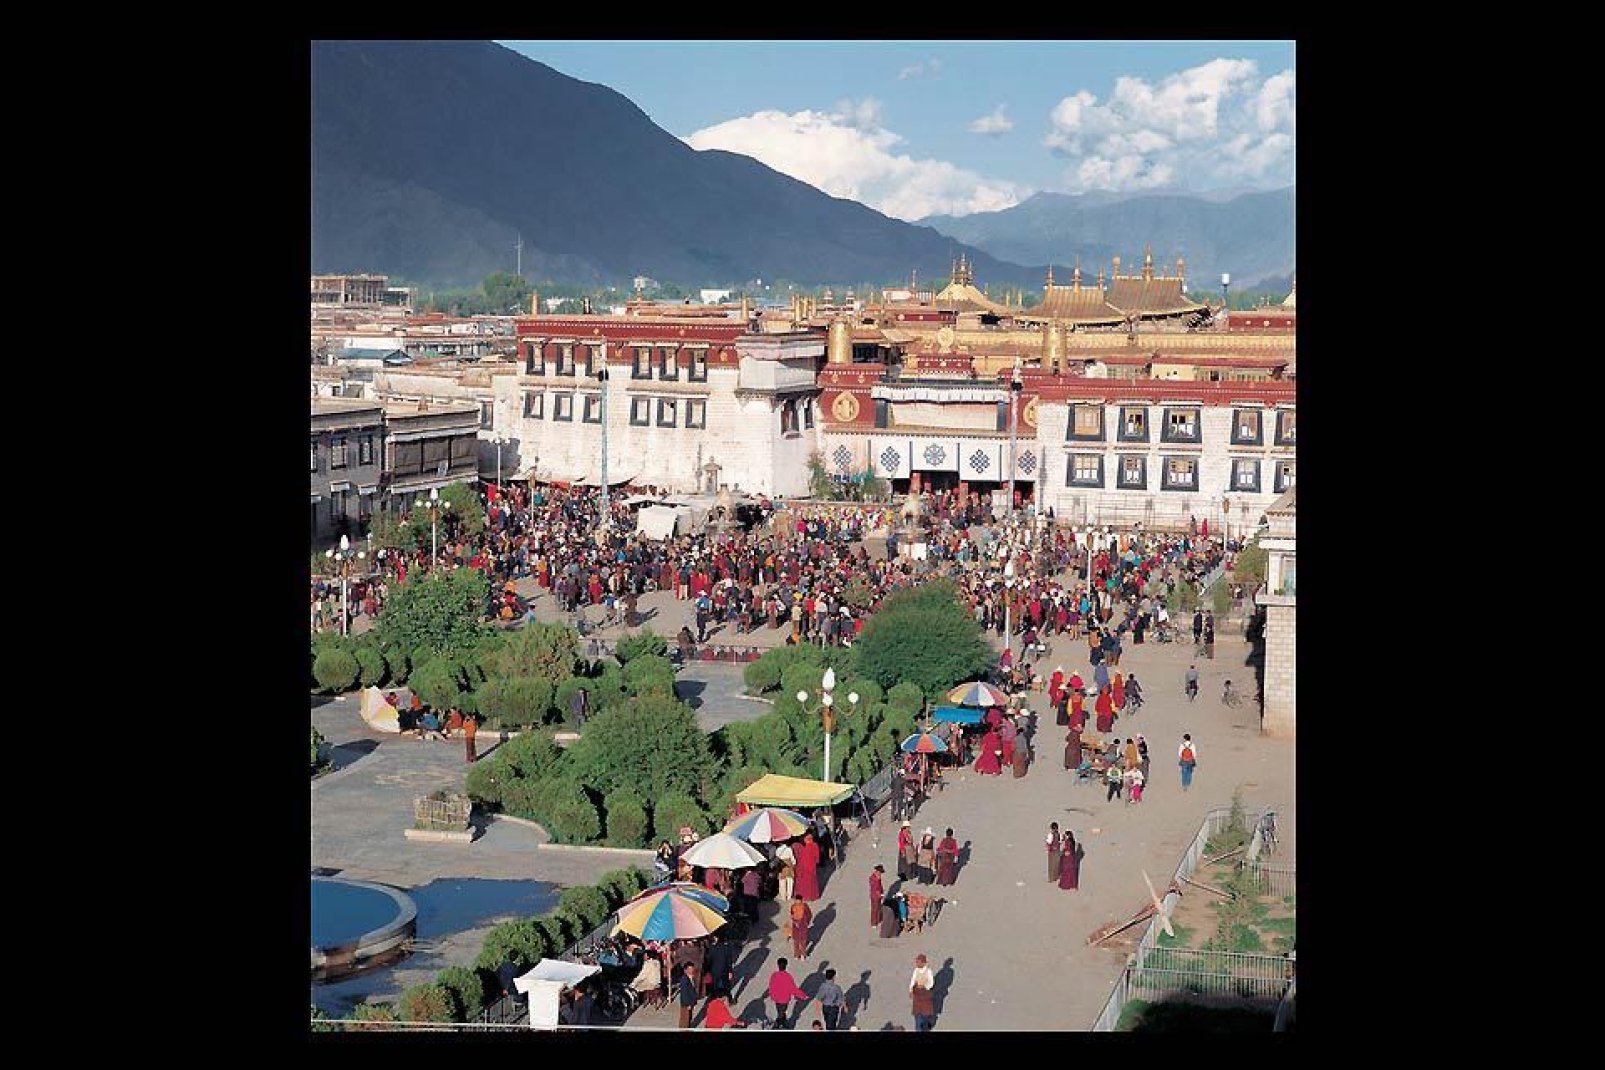 Il tempio, o monastero, di Jokhang, è il primo monastero buddista del Tibet. Fu costruito intorno al  639 dal re tibetano  Songtsen Gampo.